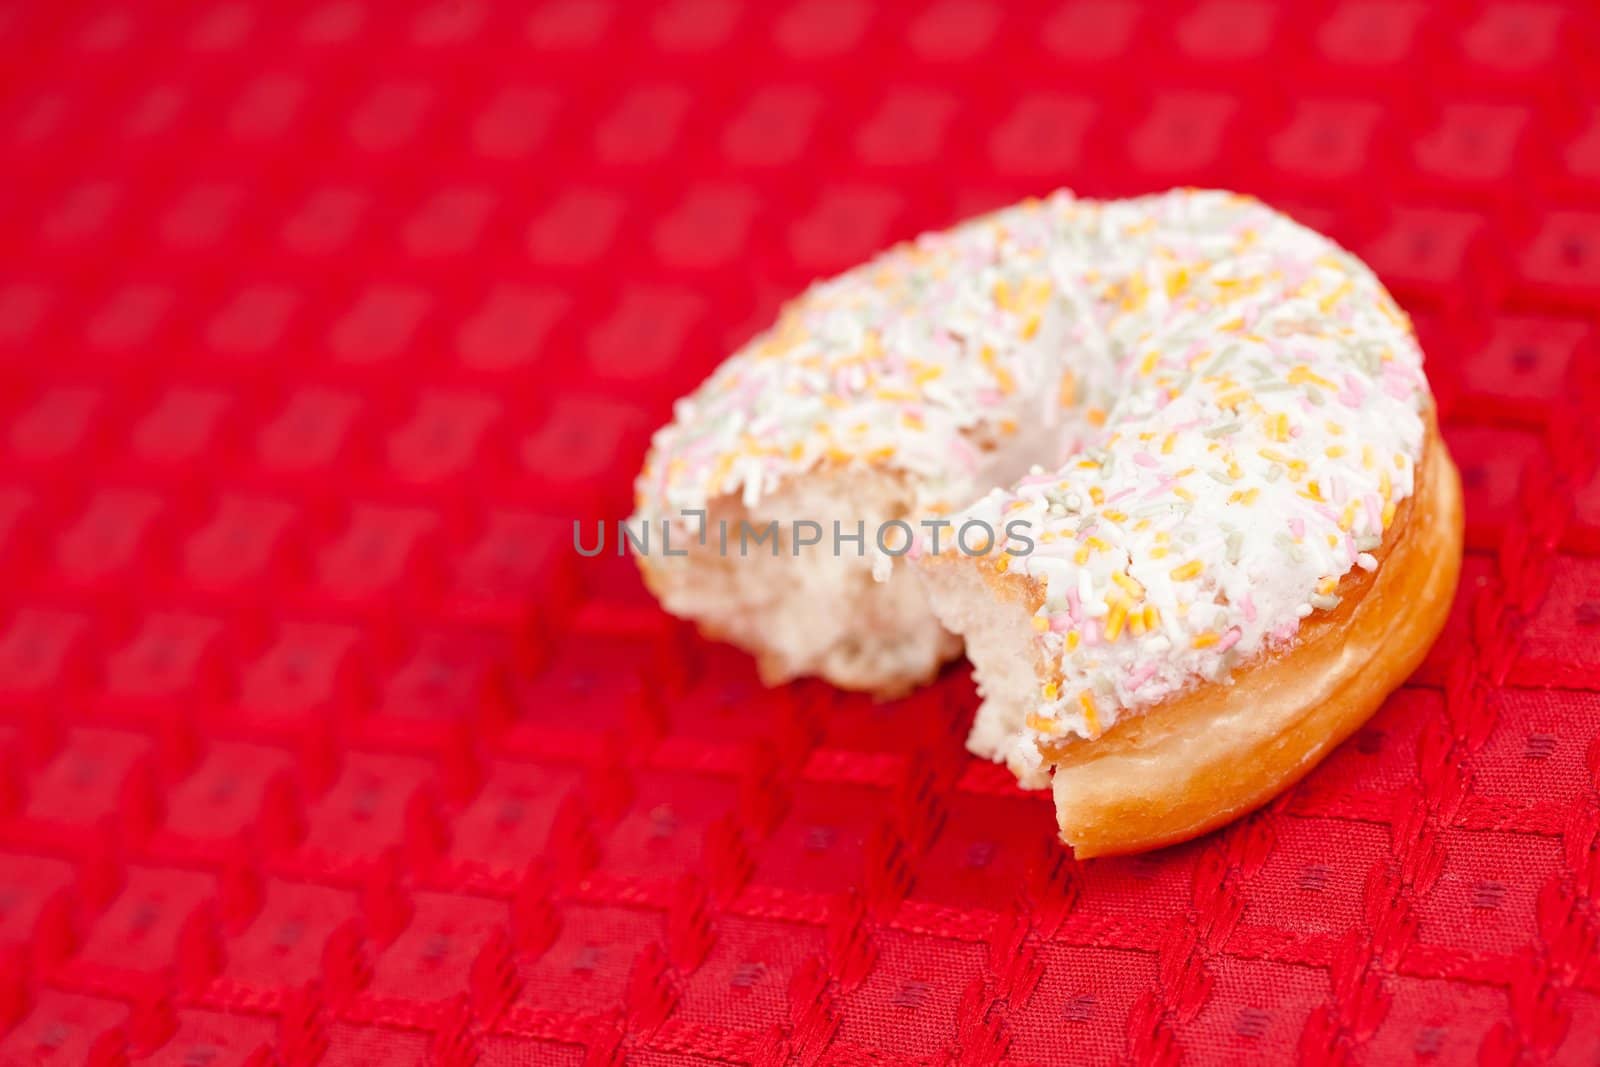 Half doughnut on a red tablecloth by Wavebreakmedia